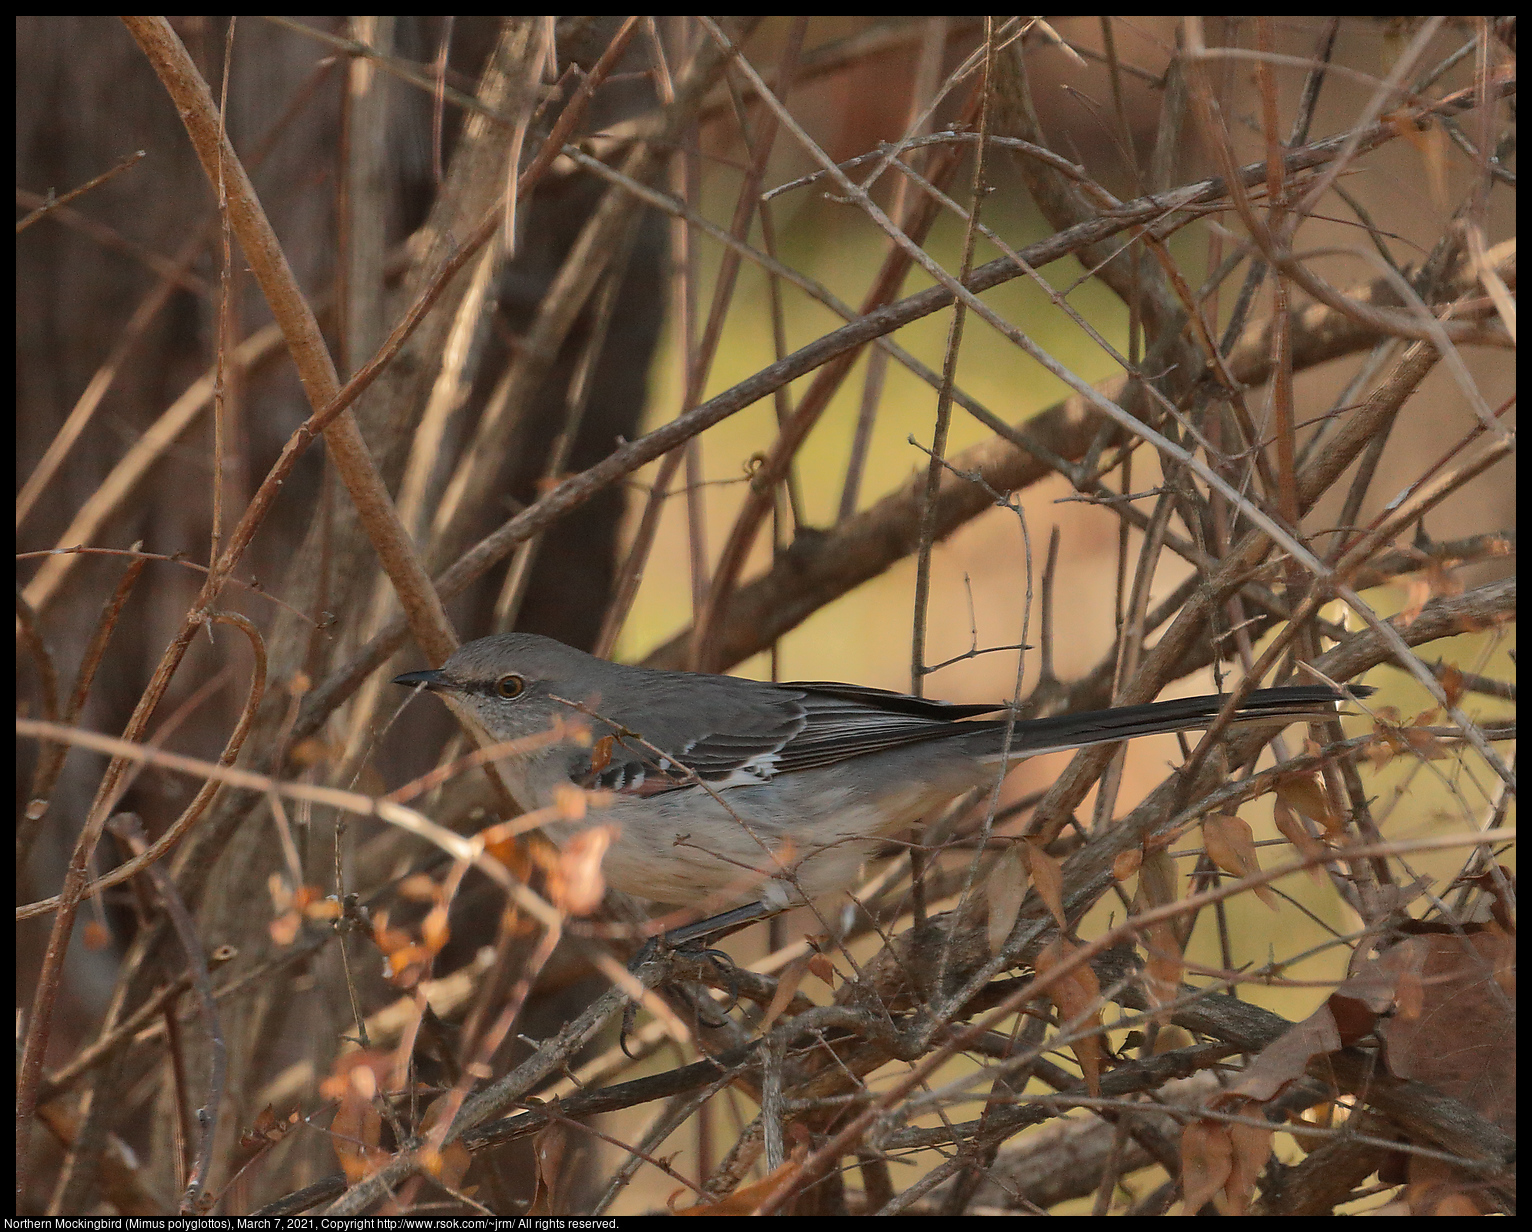 Northern Mockingbird (Mimus polyglottos), March 7, 2021